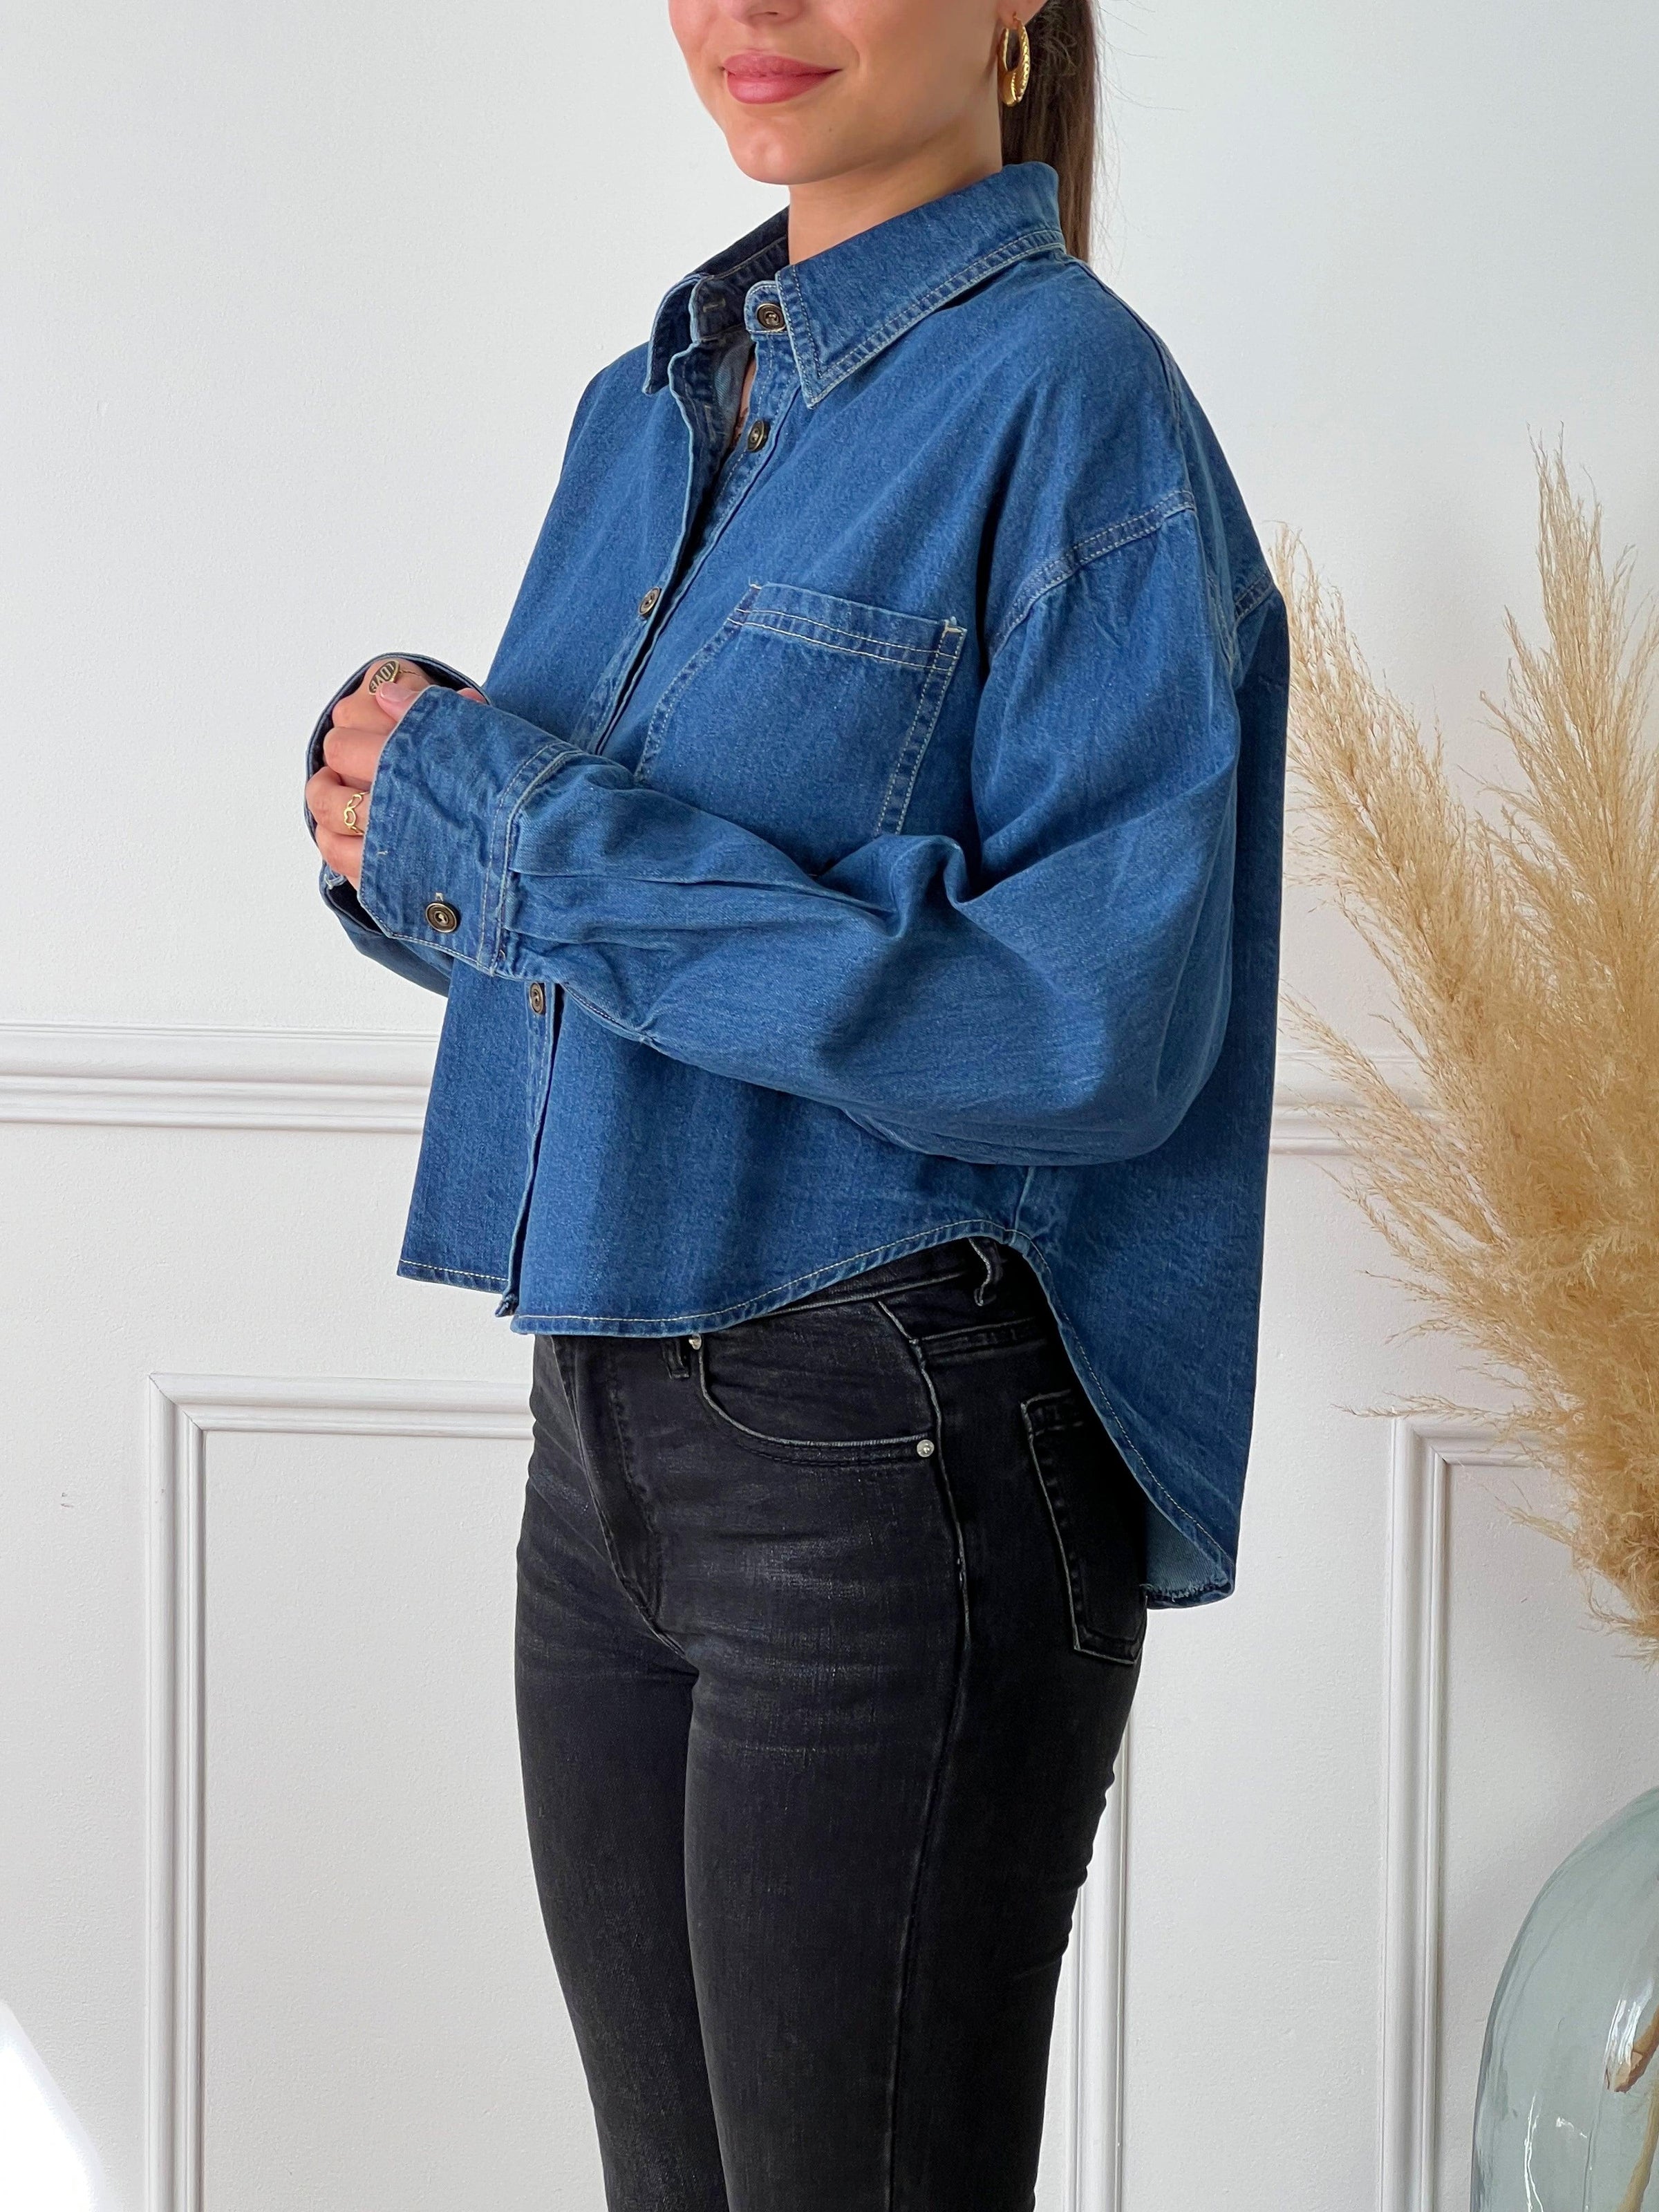 Chemise bleue en jean femme Chemise Col chemise Manches longues Boutonnée sur le devant et aux manches Poches au niveau de la poitrine à gauche Plus longue à l'arrière Couleurs : bleu jean  Composition : 100% Coton Fabriqué en R.P.C